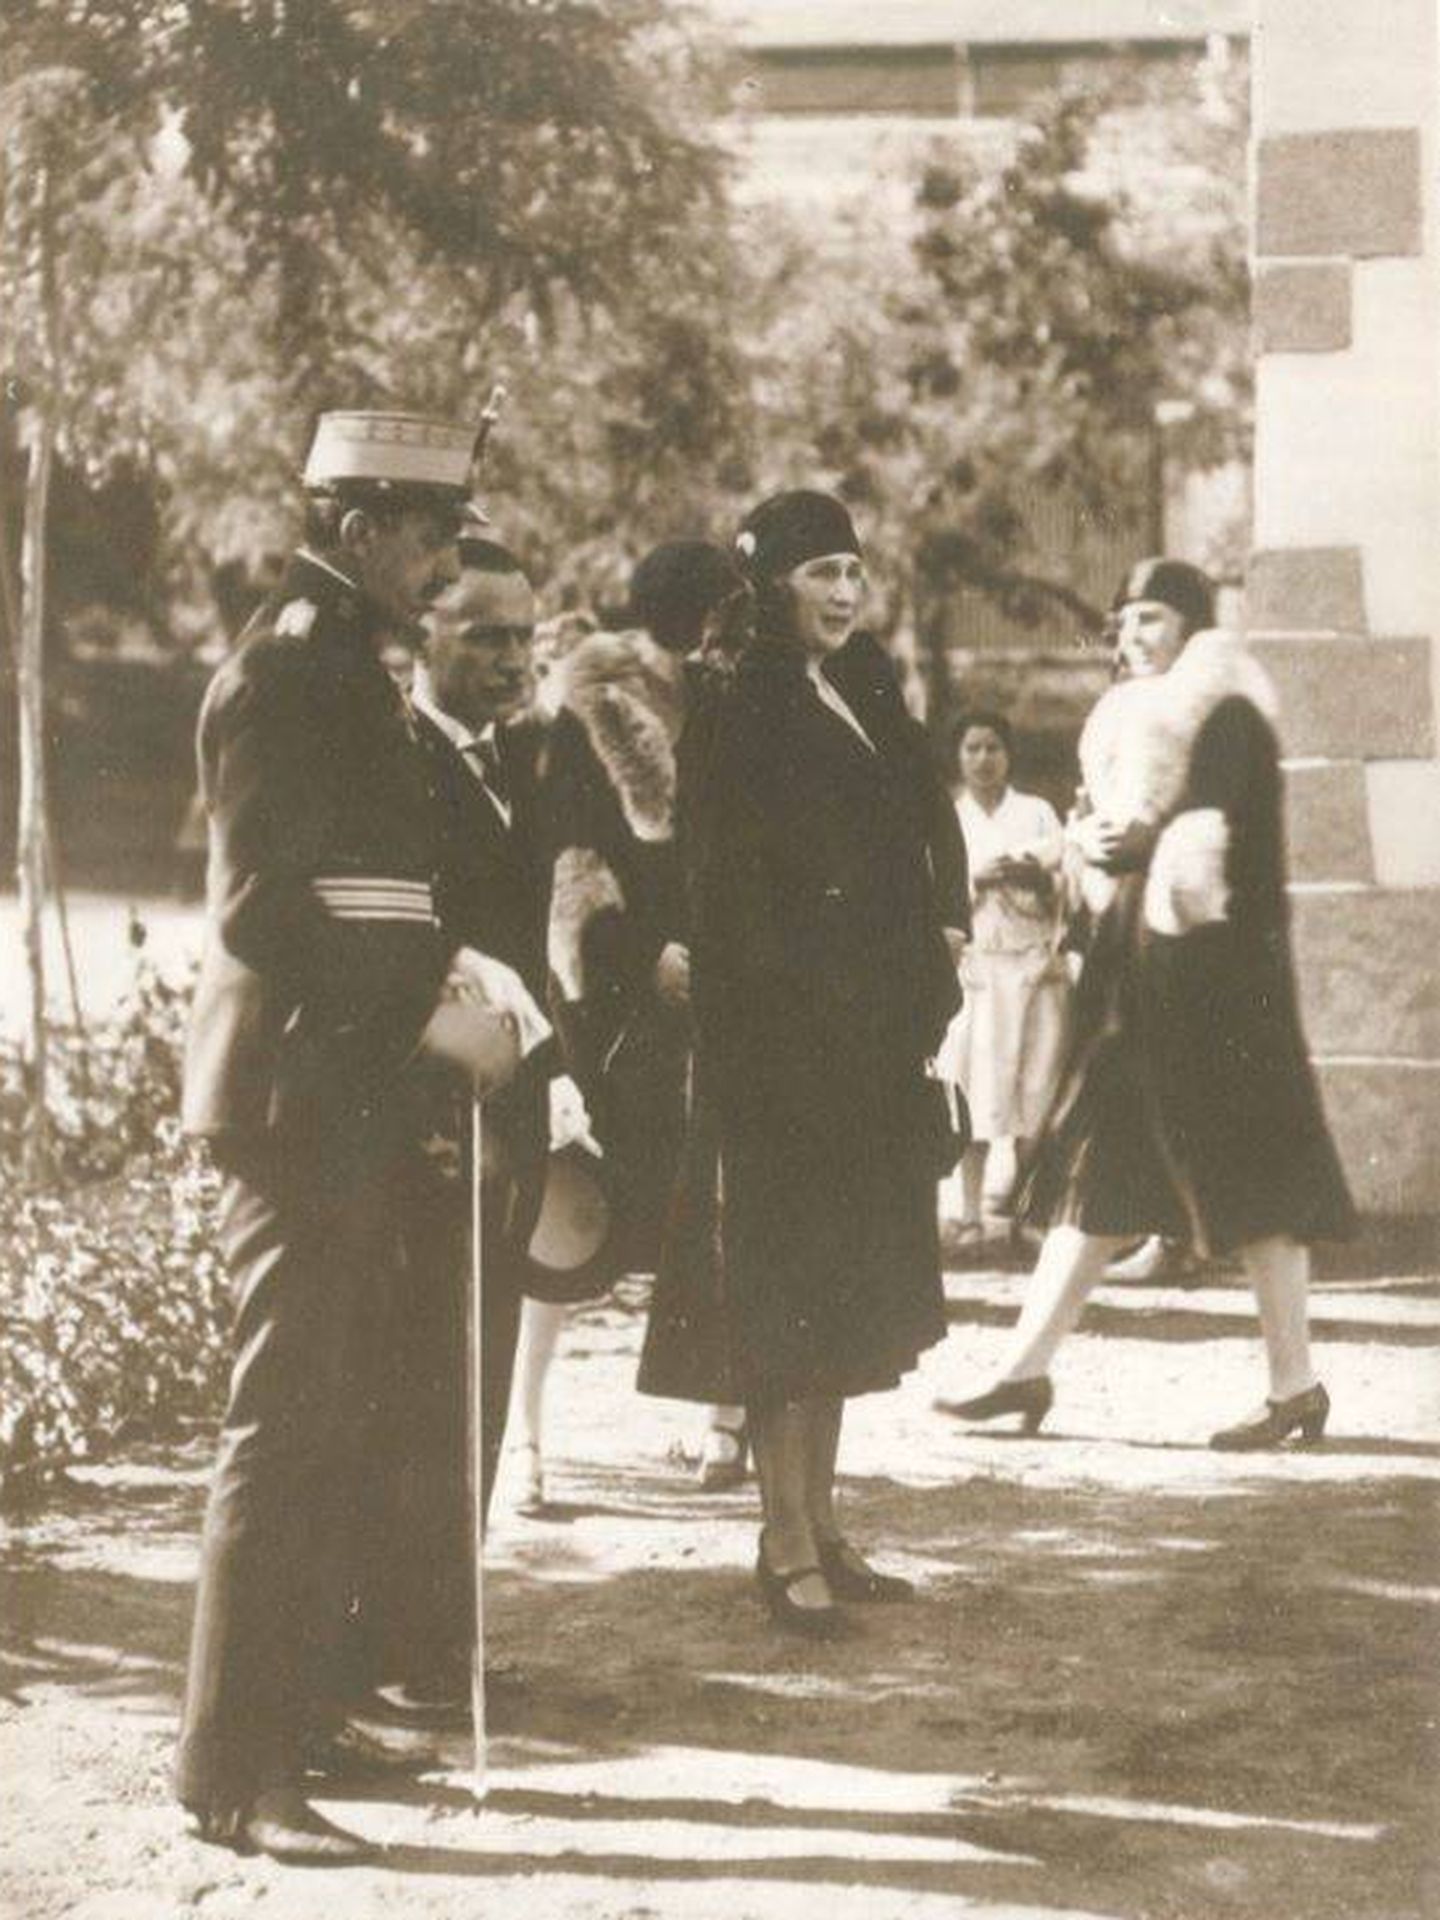 Alfonso XIII y doña Mercedes en una visita al hotel que lleva su nombre. (Archivo)